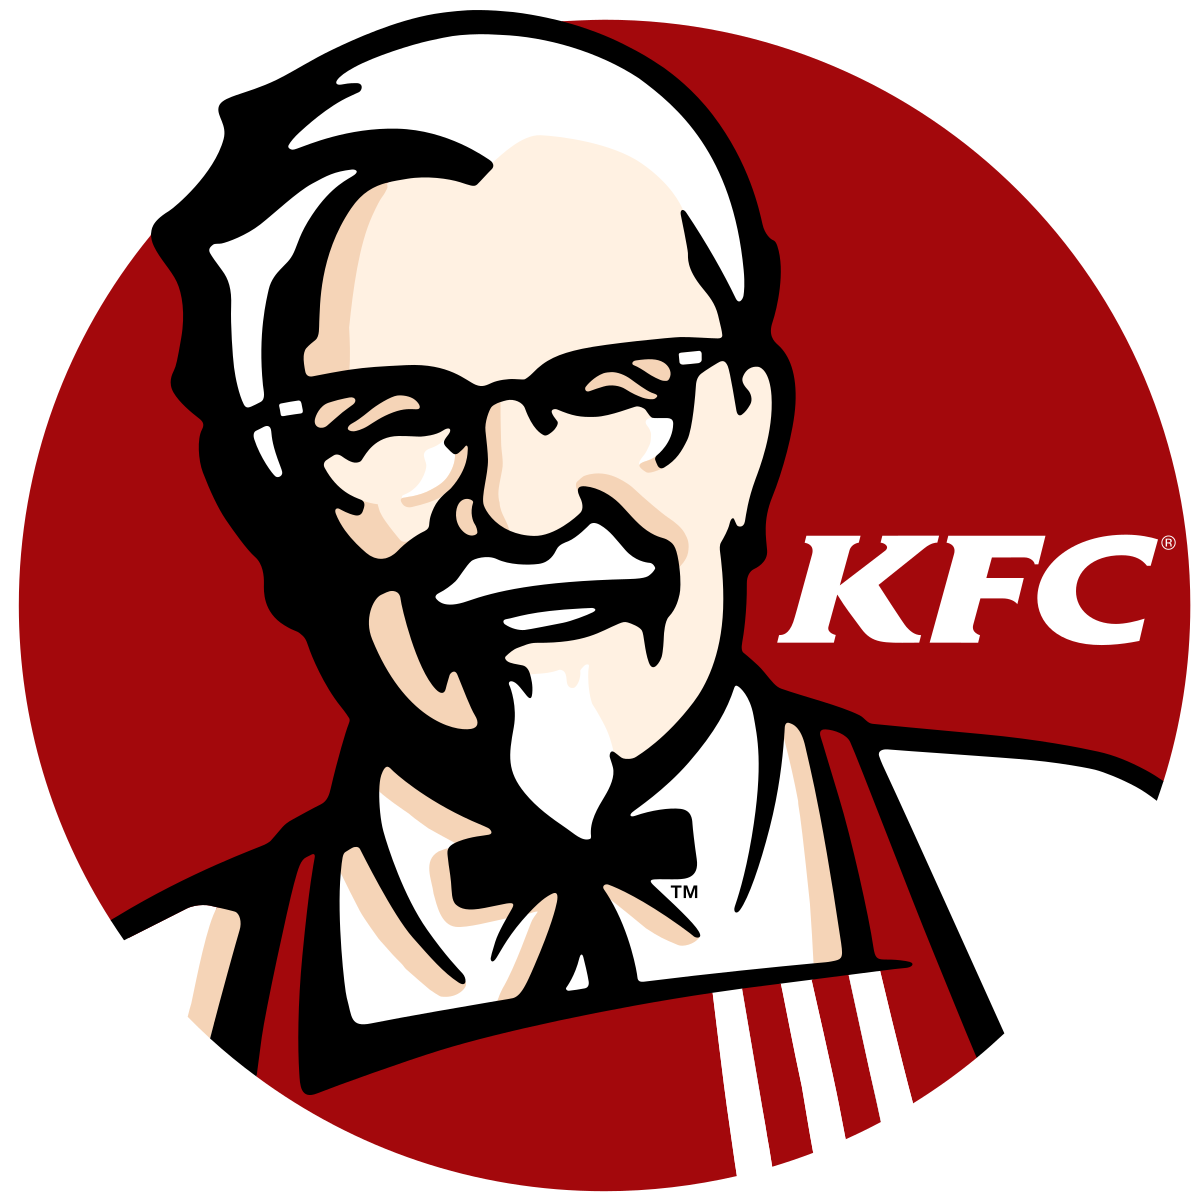 Pobierz aplikację KFC i zacznij korzystać z udogodnień!